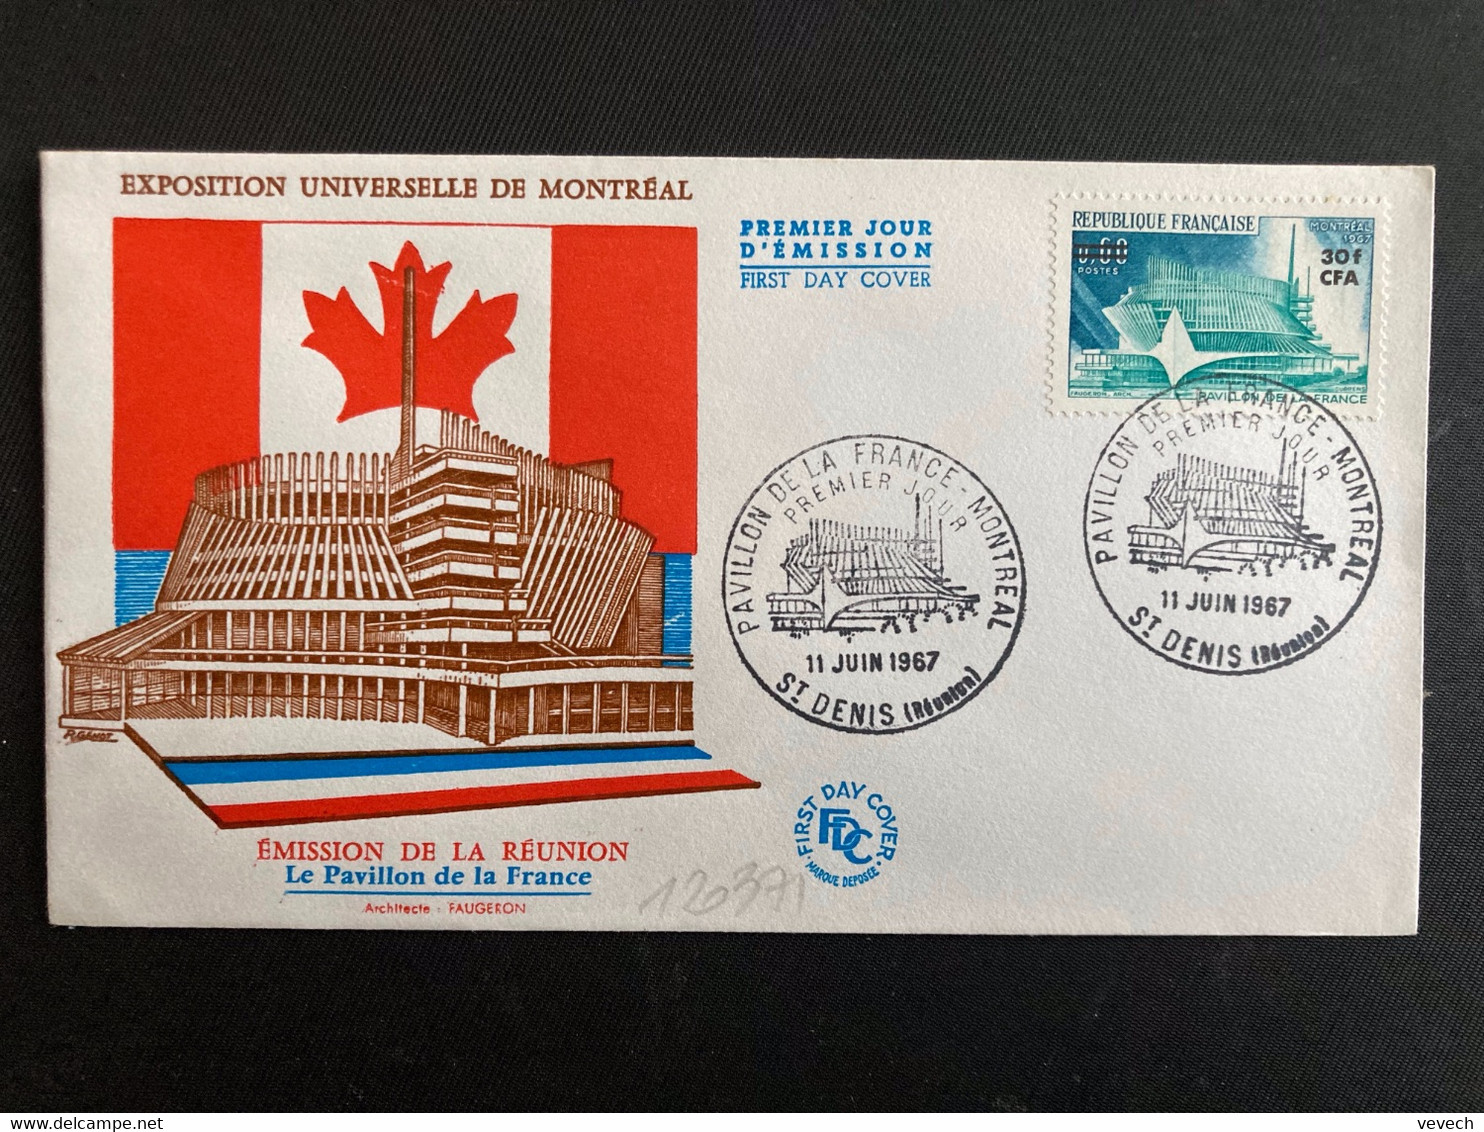 LETTRE TP PAVILLON DE LA FRANCE MONTREAL 1967 0,60 Surch.30f CFA OBL.11 JUIN 1967 ST DENIS (Réunion) PREMIER JOUR - 1967 – Montreal (Canada)